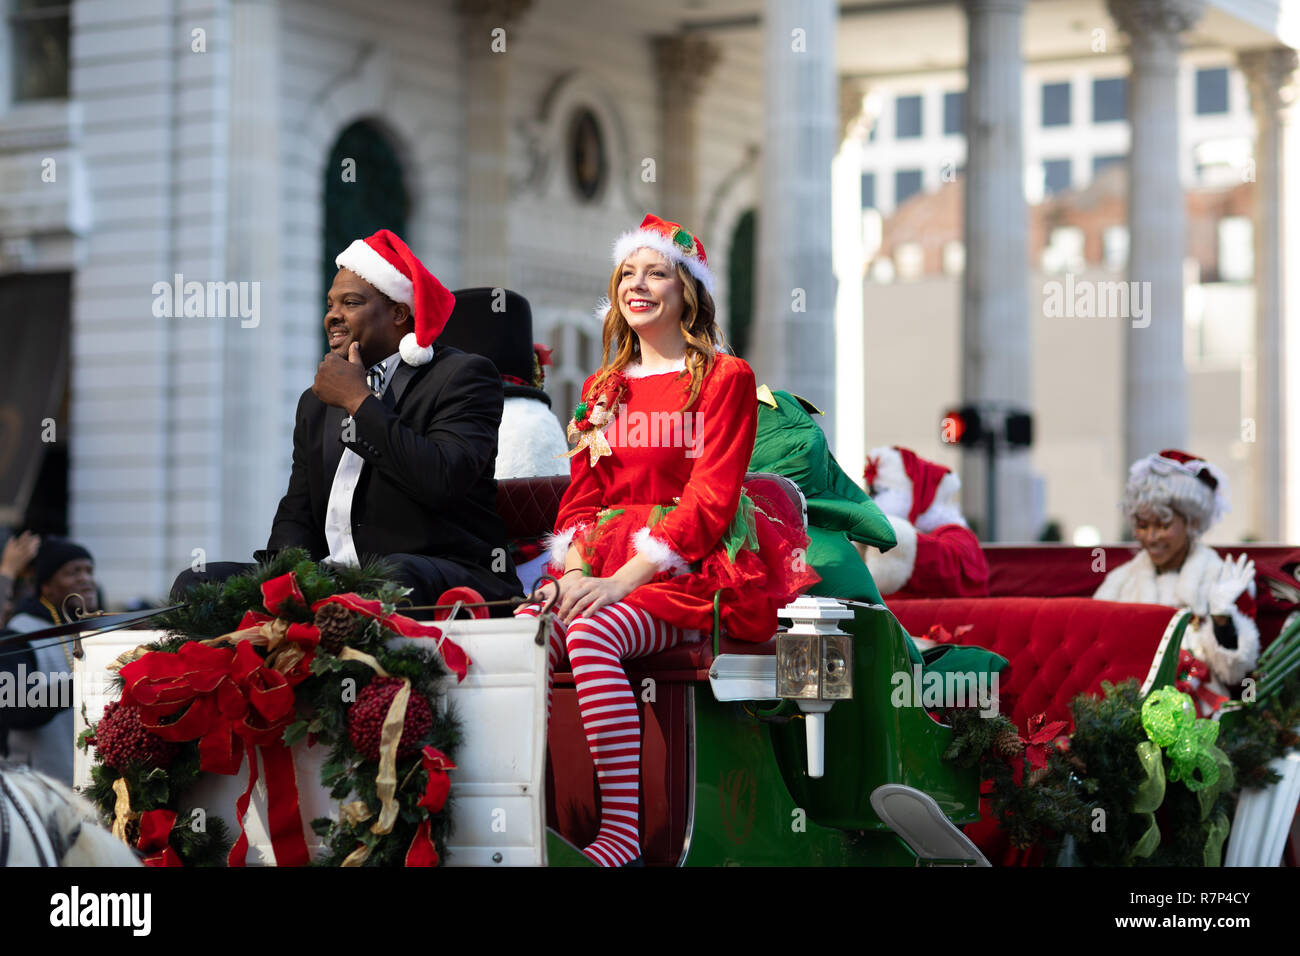 New Orleans, Louisiana, EE.UU. - Noviembre 24, 2018: El Bayou Classic Parade, hombre mujer vistiendo trajes de Navidad montando un carro desfile Fotografía de stock Alamy